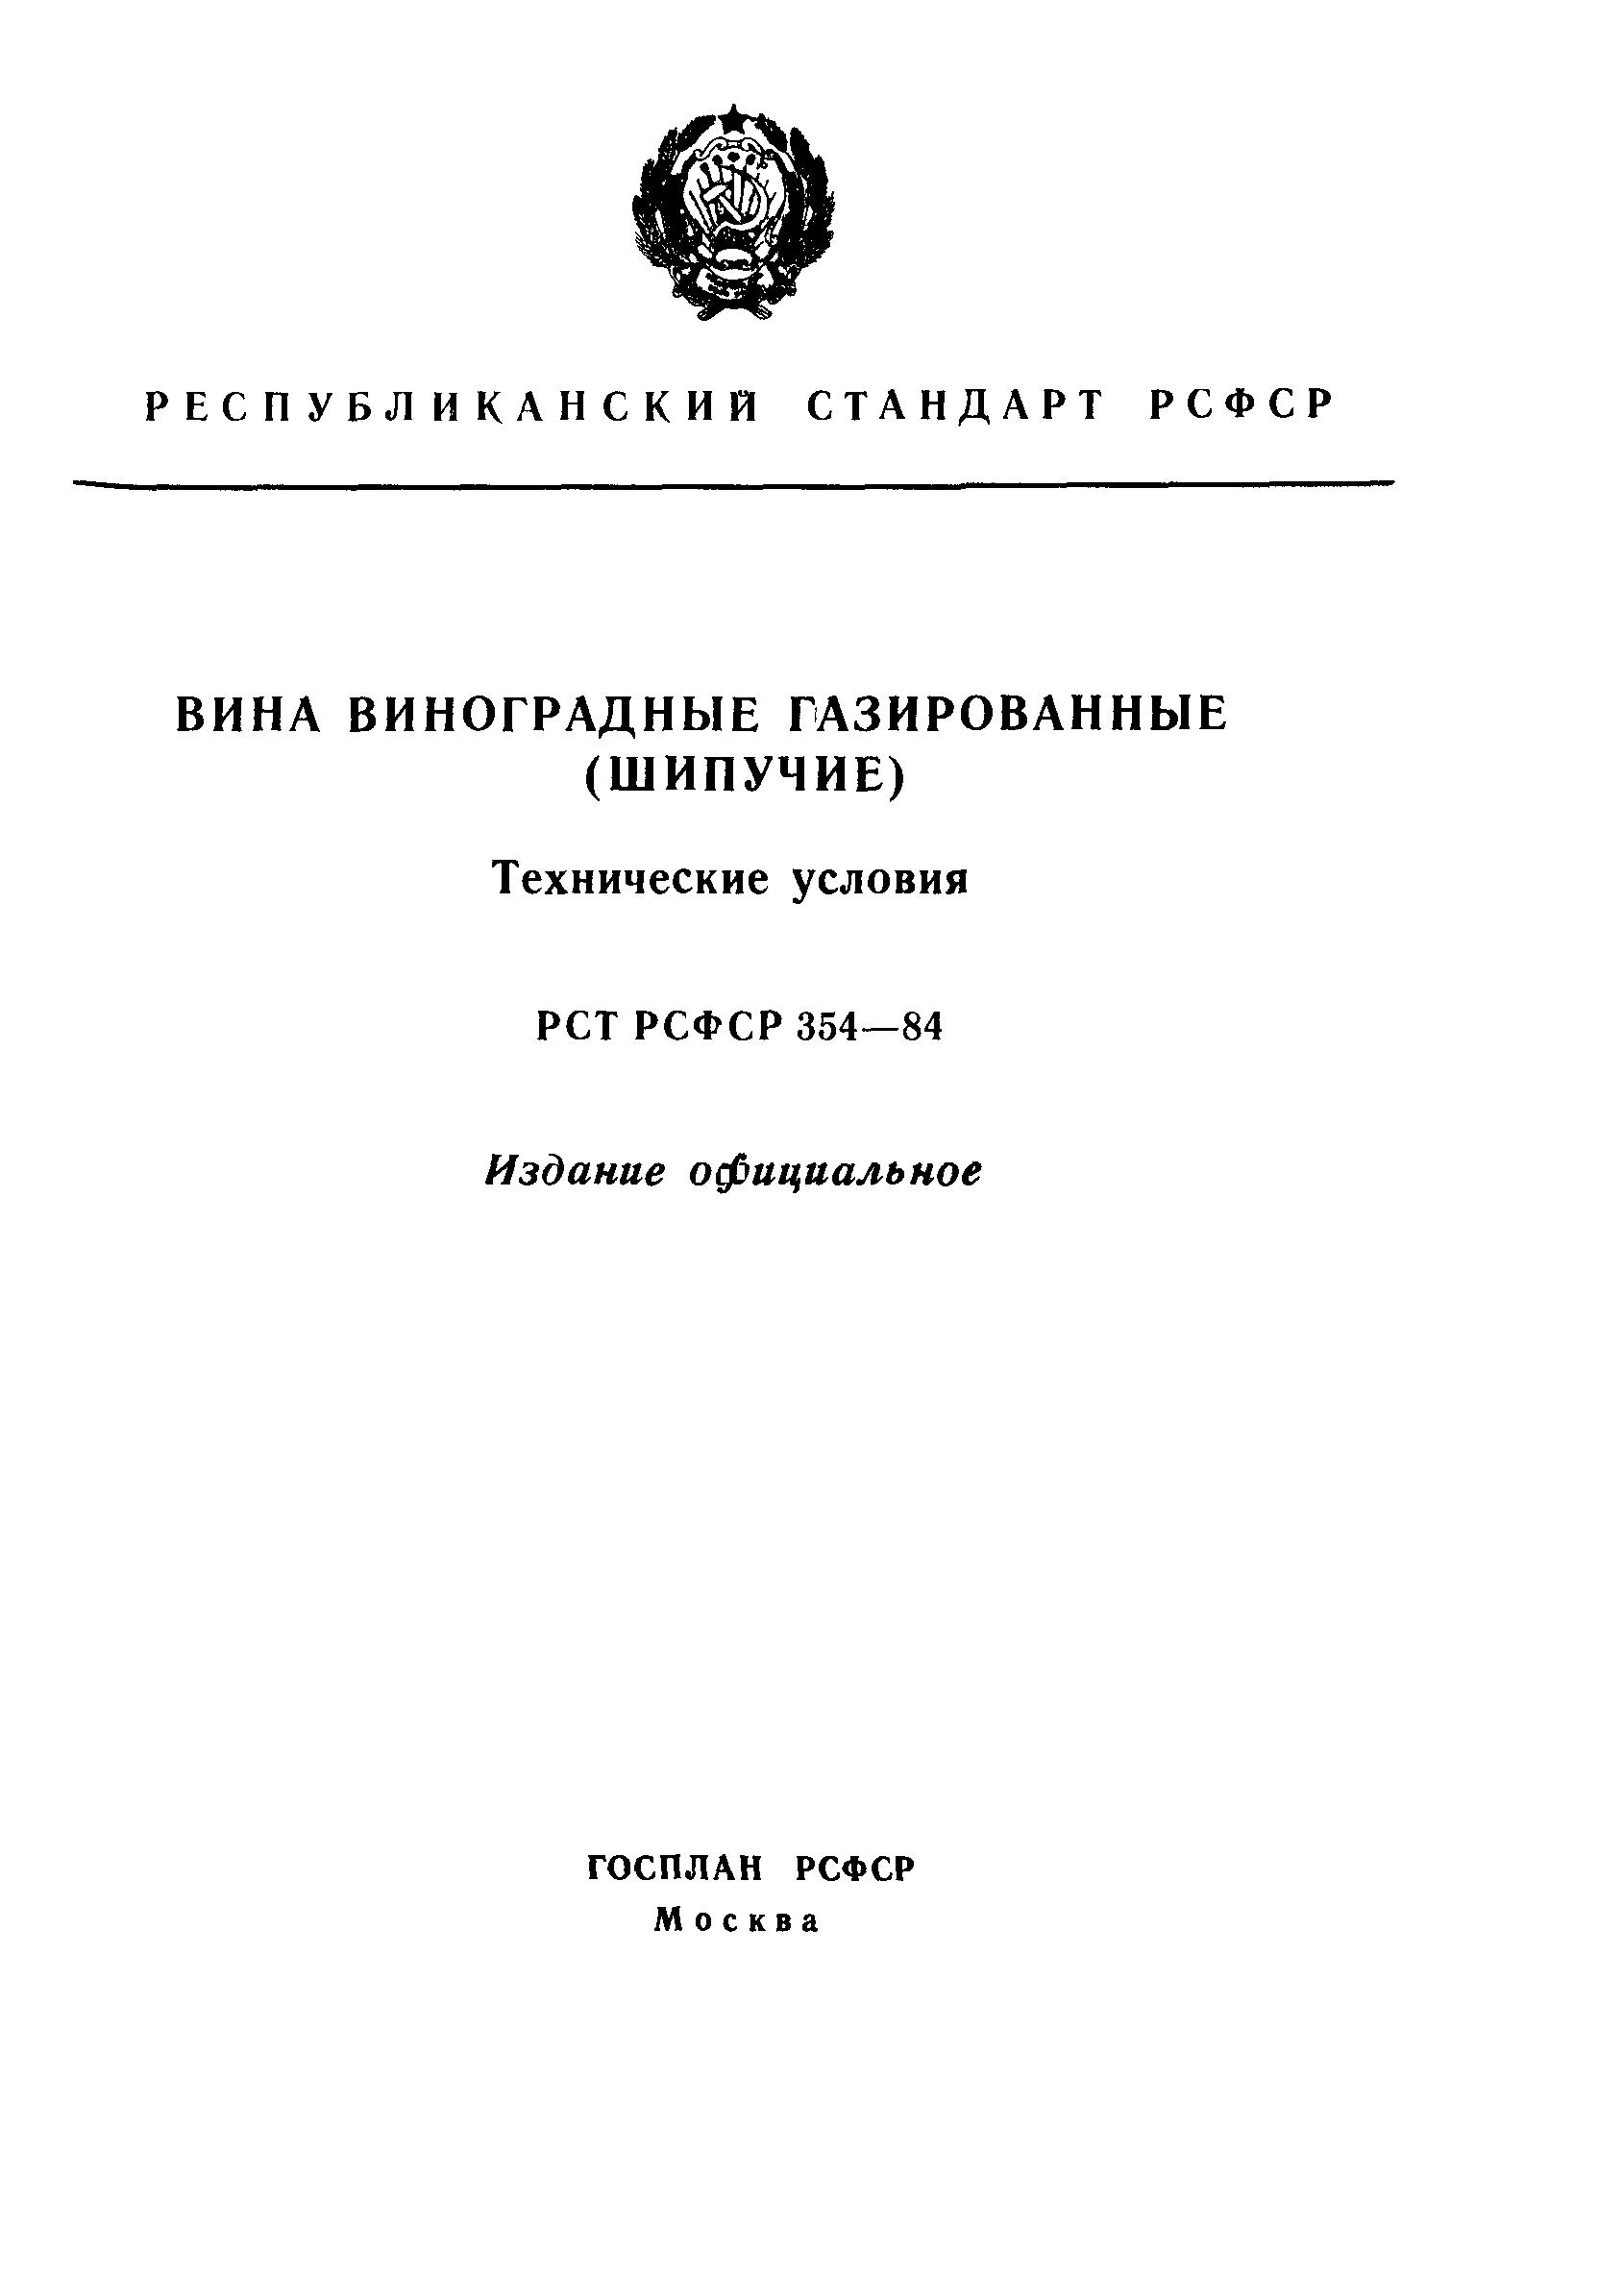 РСТ РСФСР 354-84